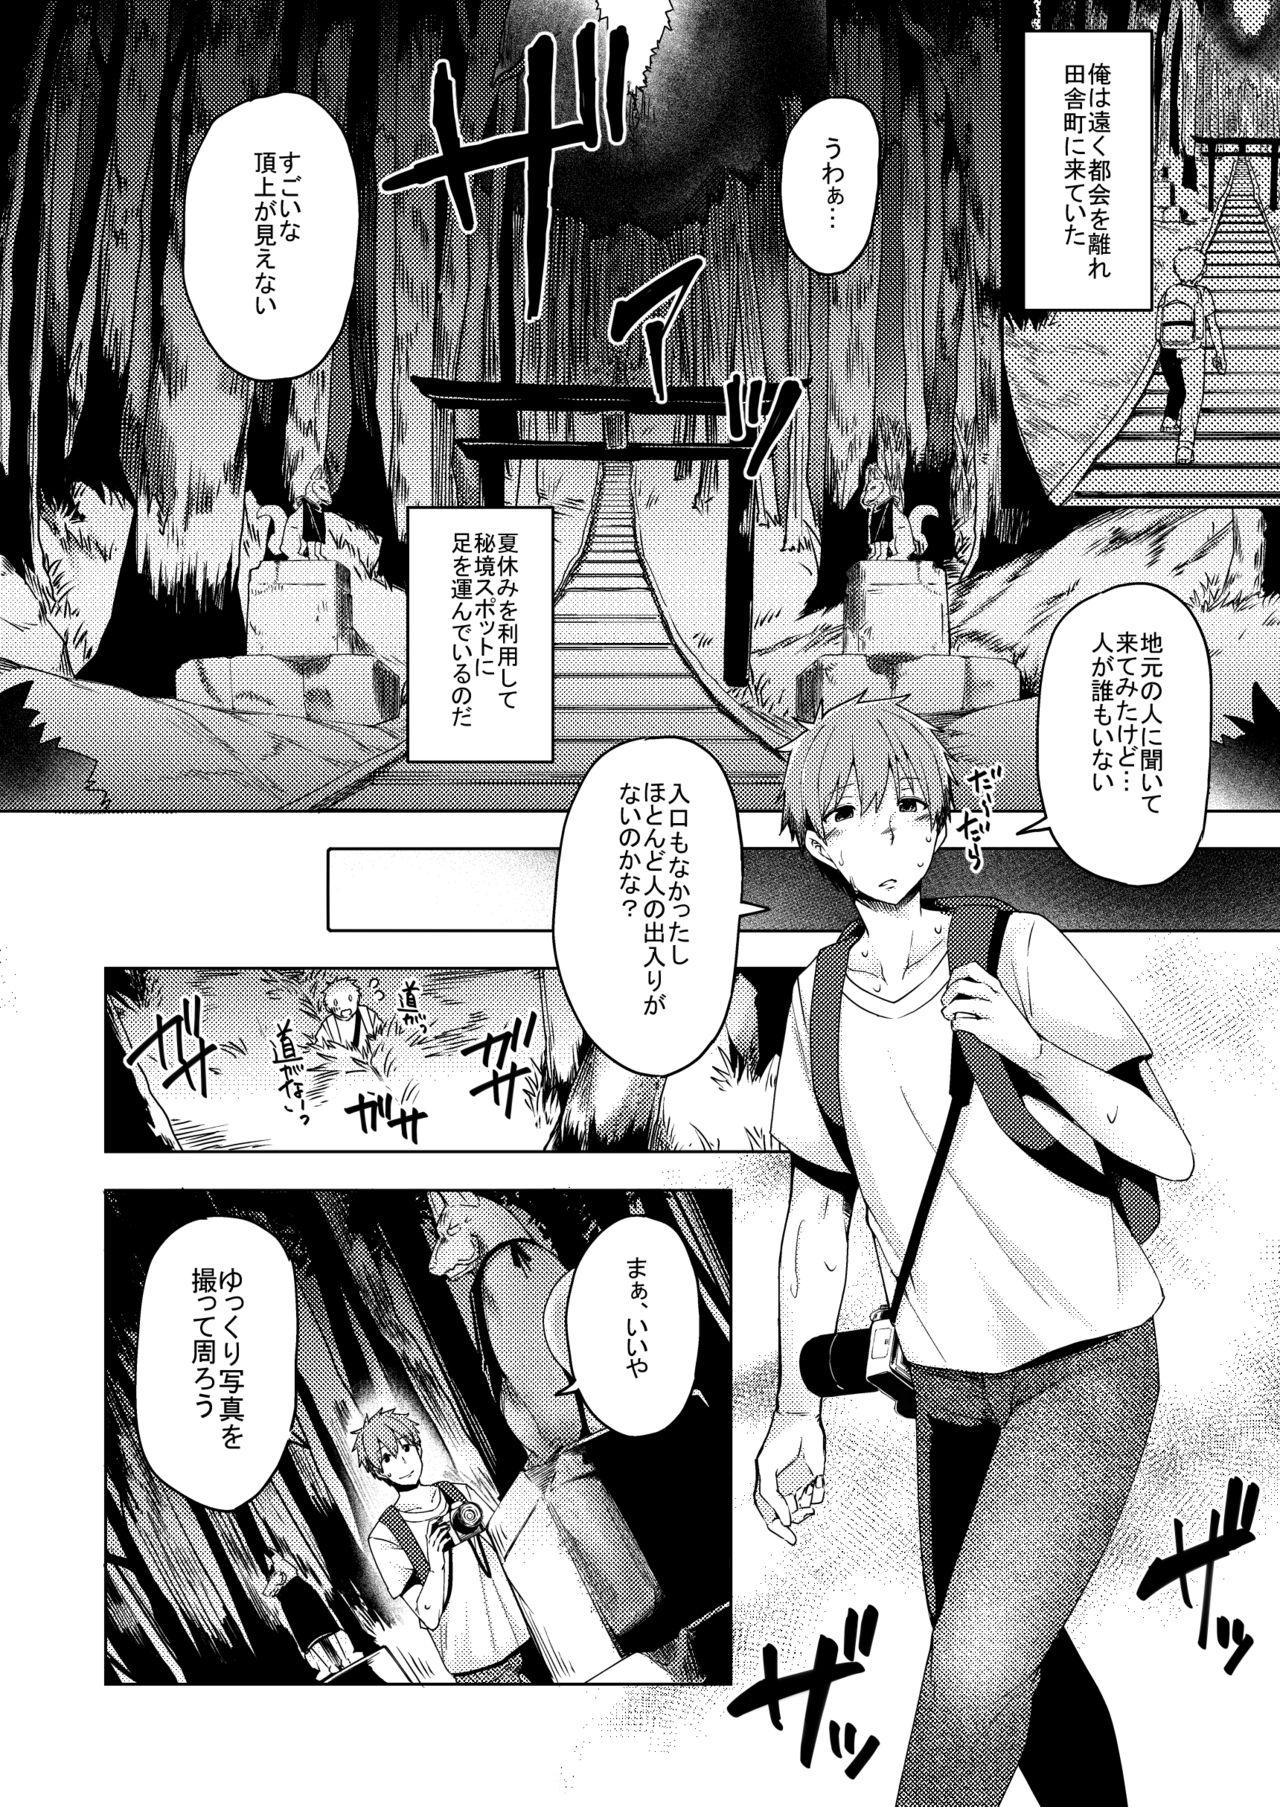 Uncut Natsu no Kami, Hitoshizuku - Original Art - Page 4